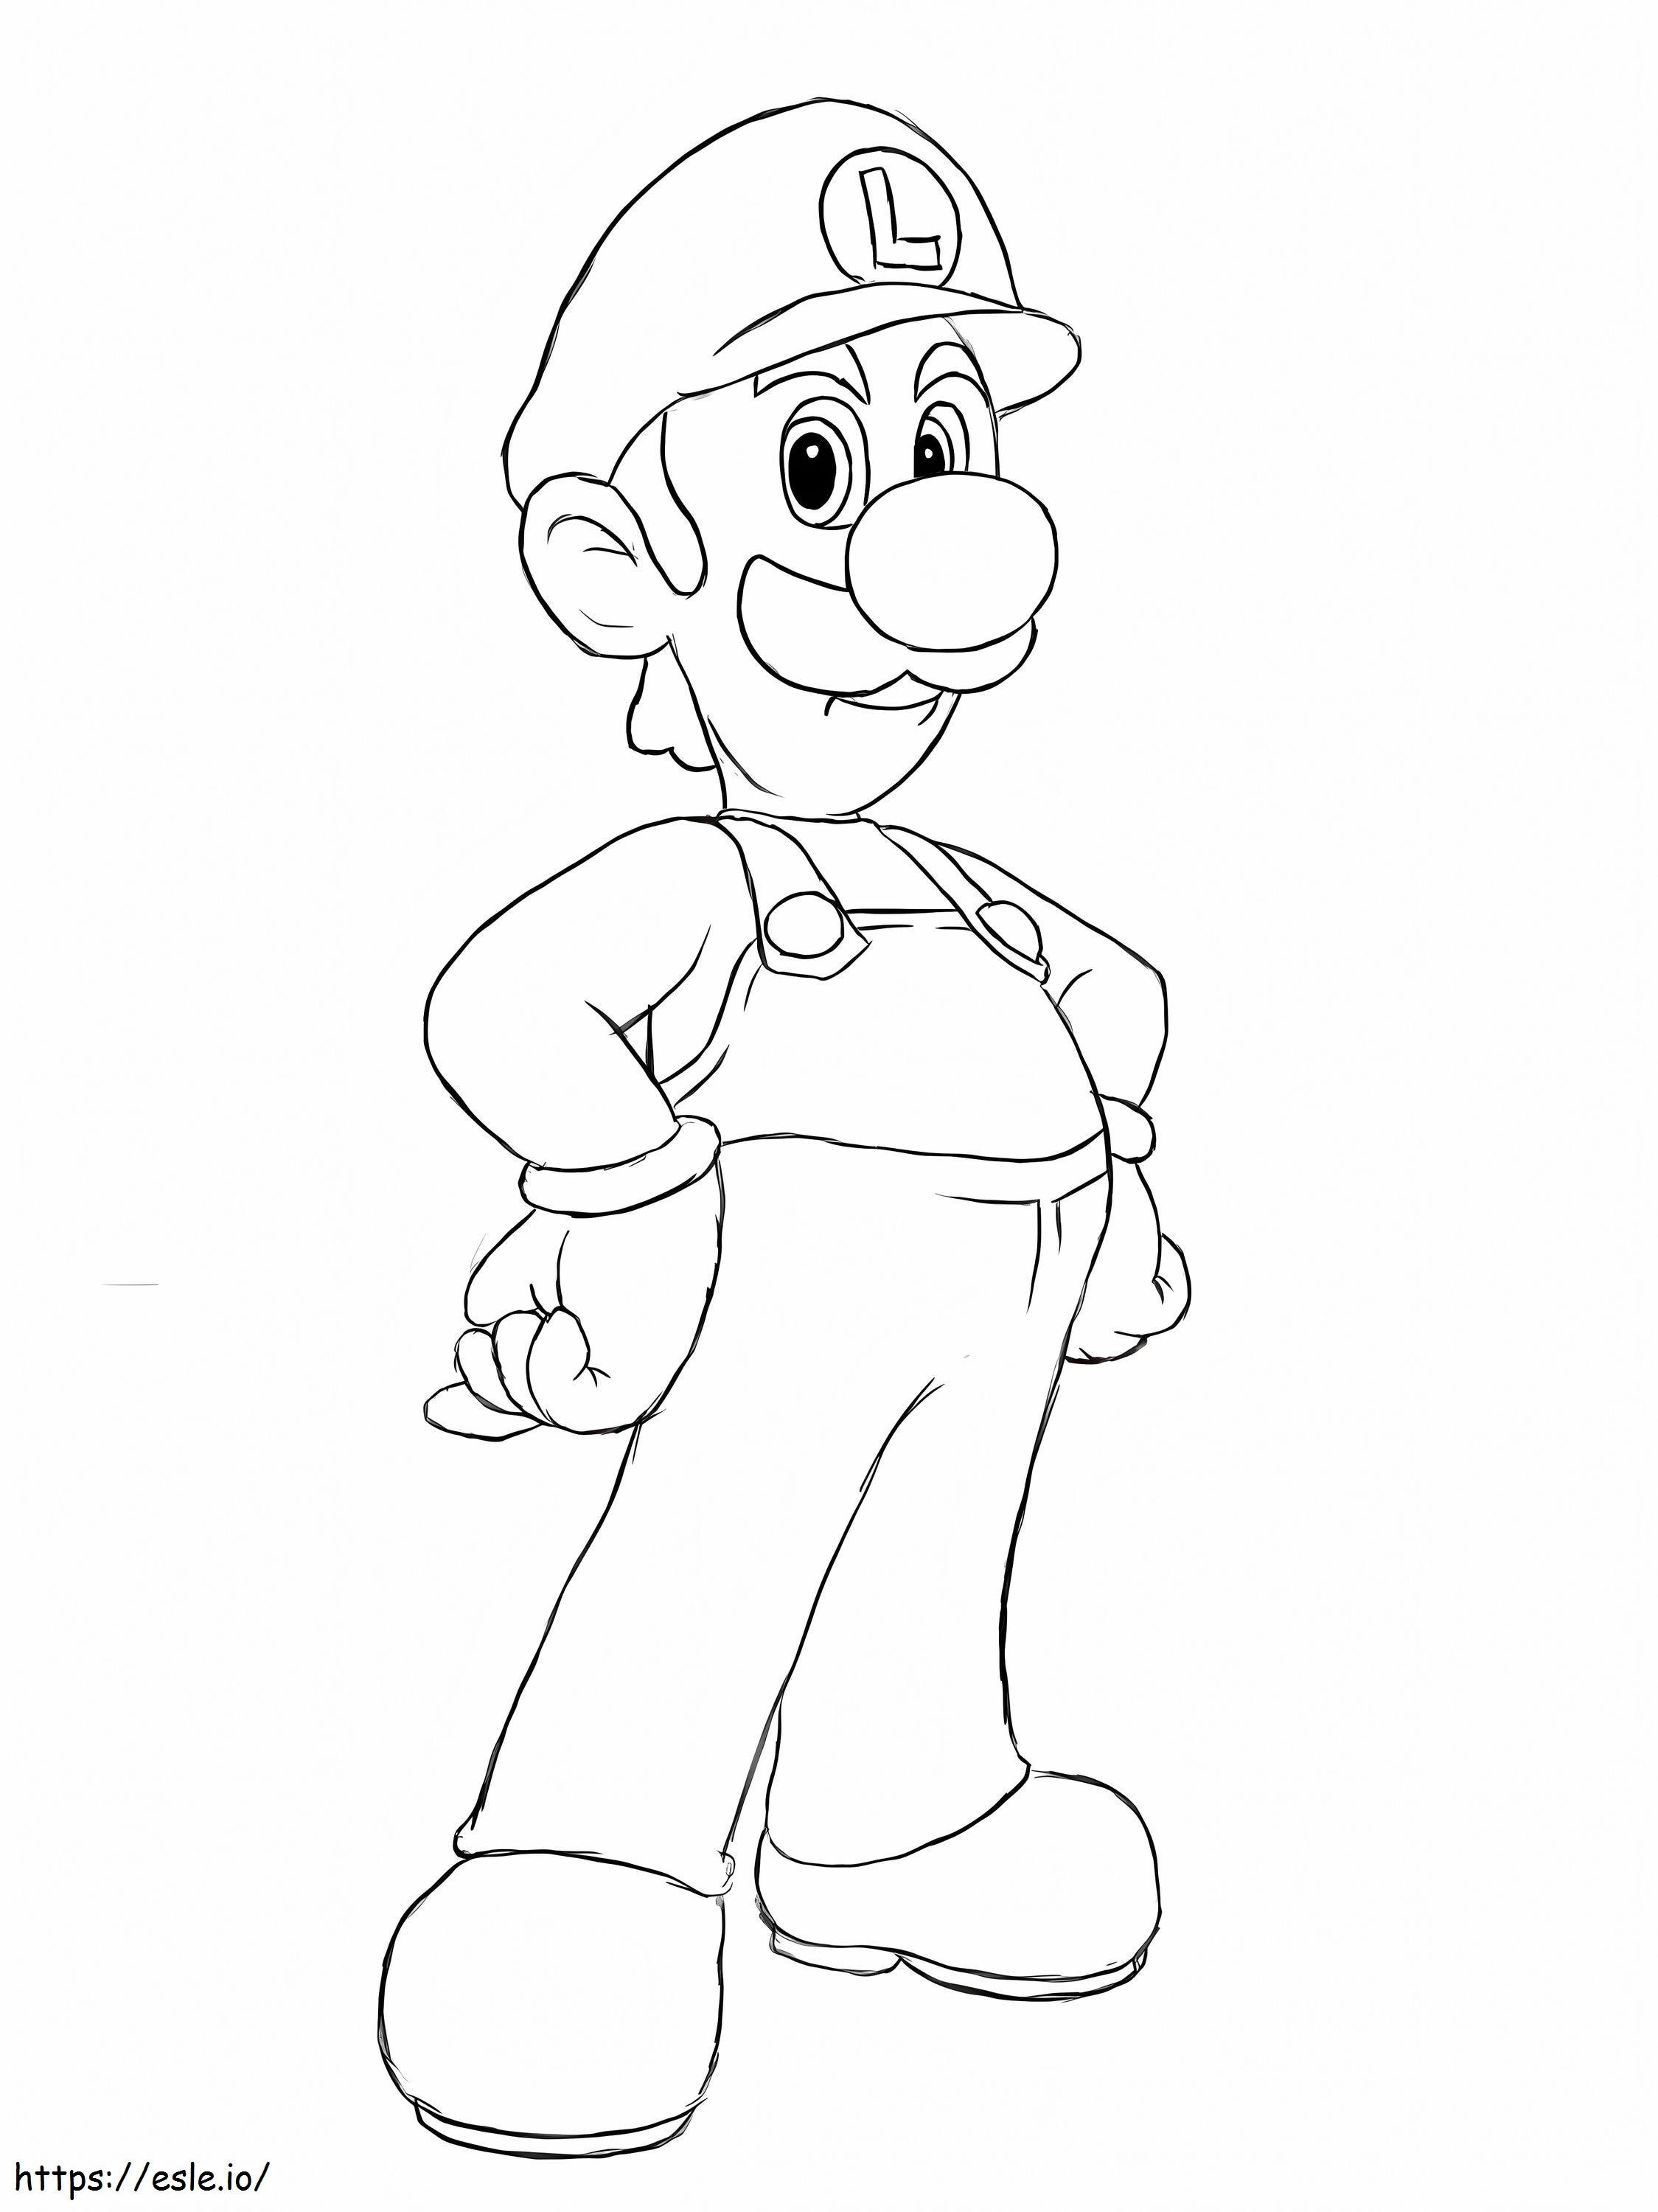 Luigi Disegno da colorare